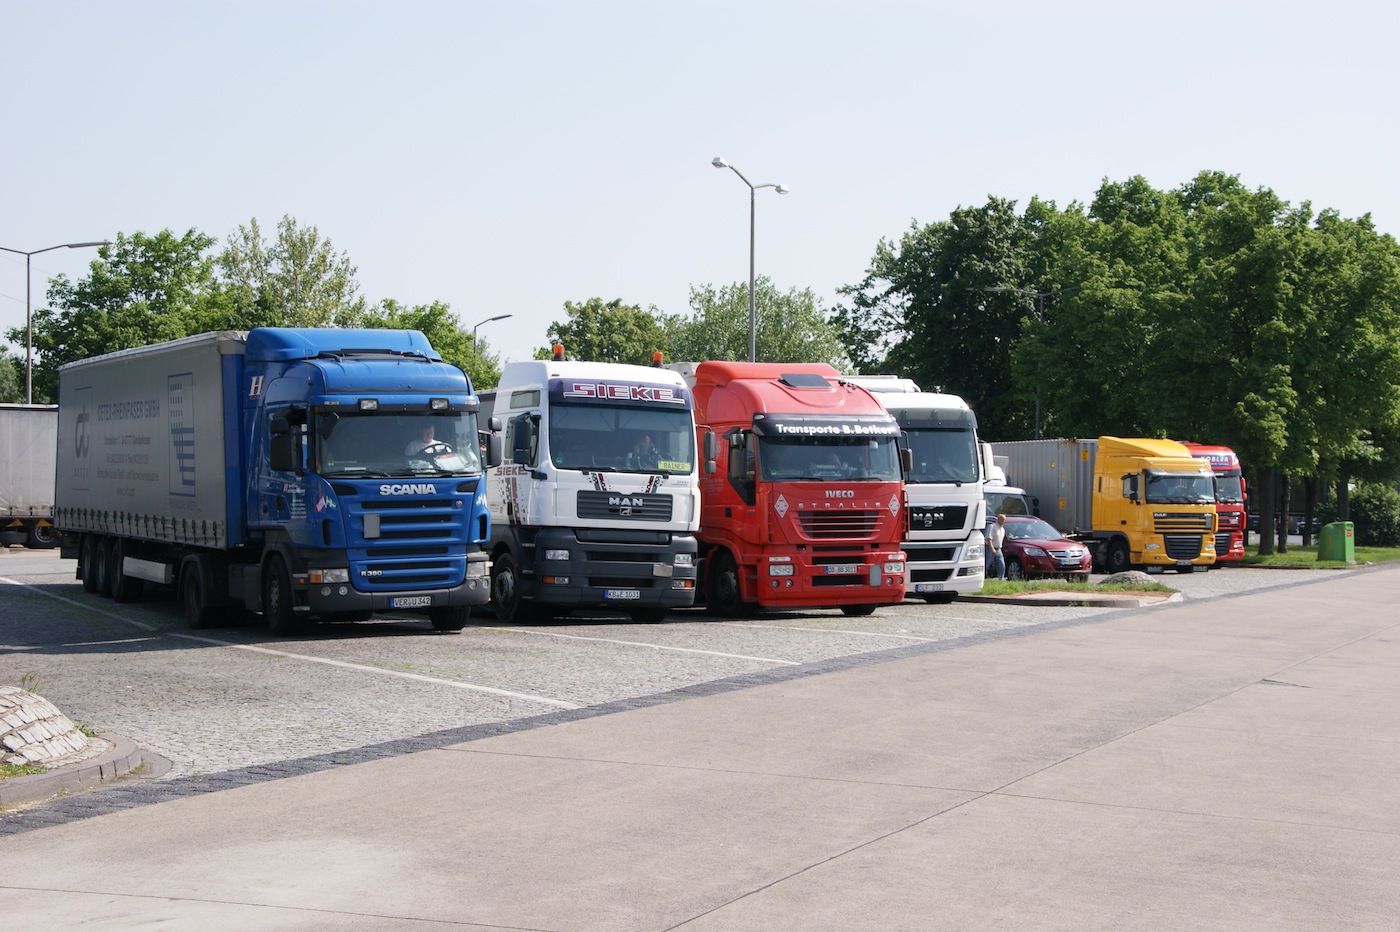 Los fabricantes de camiones investigados por Competencia de la UE